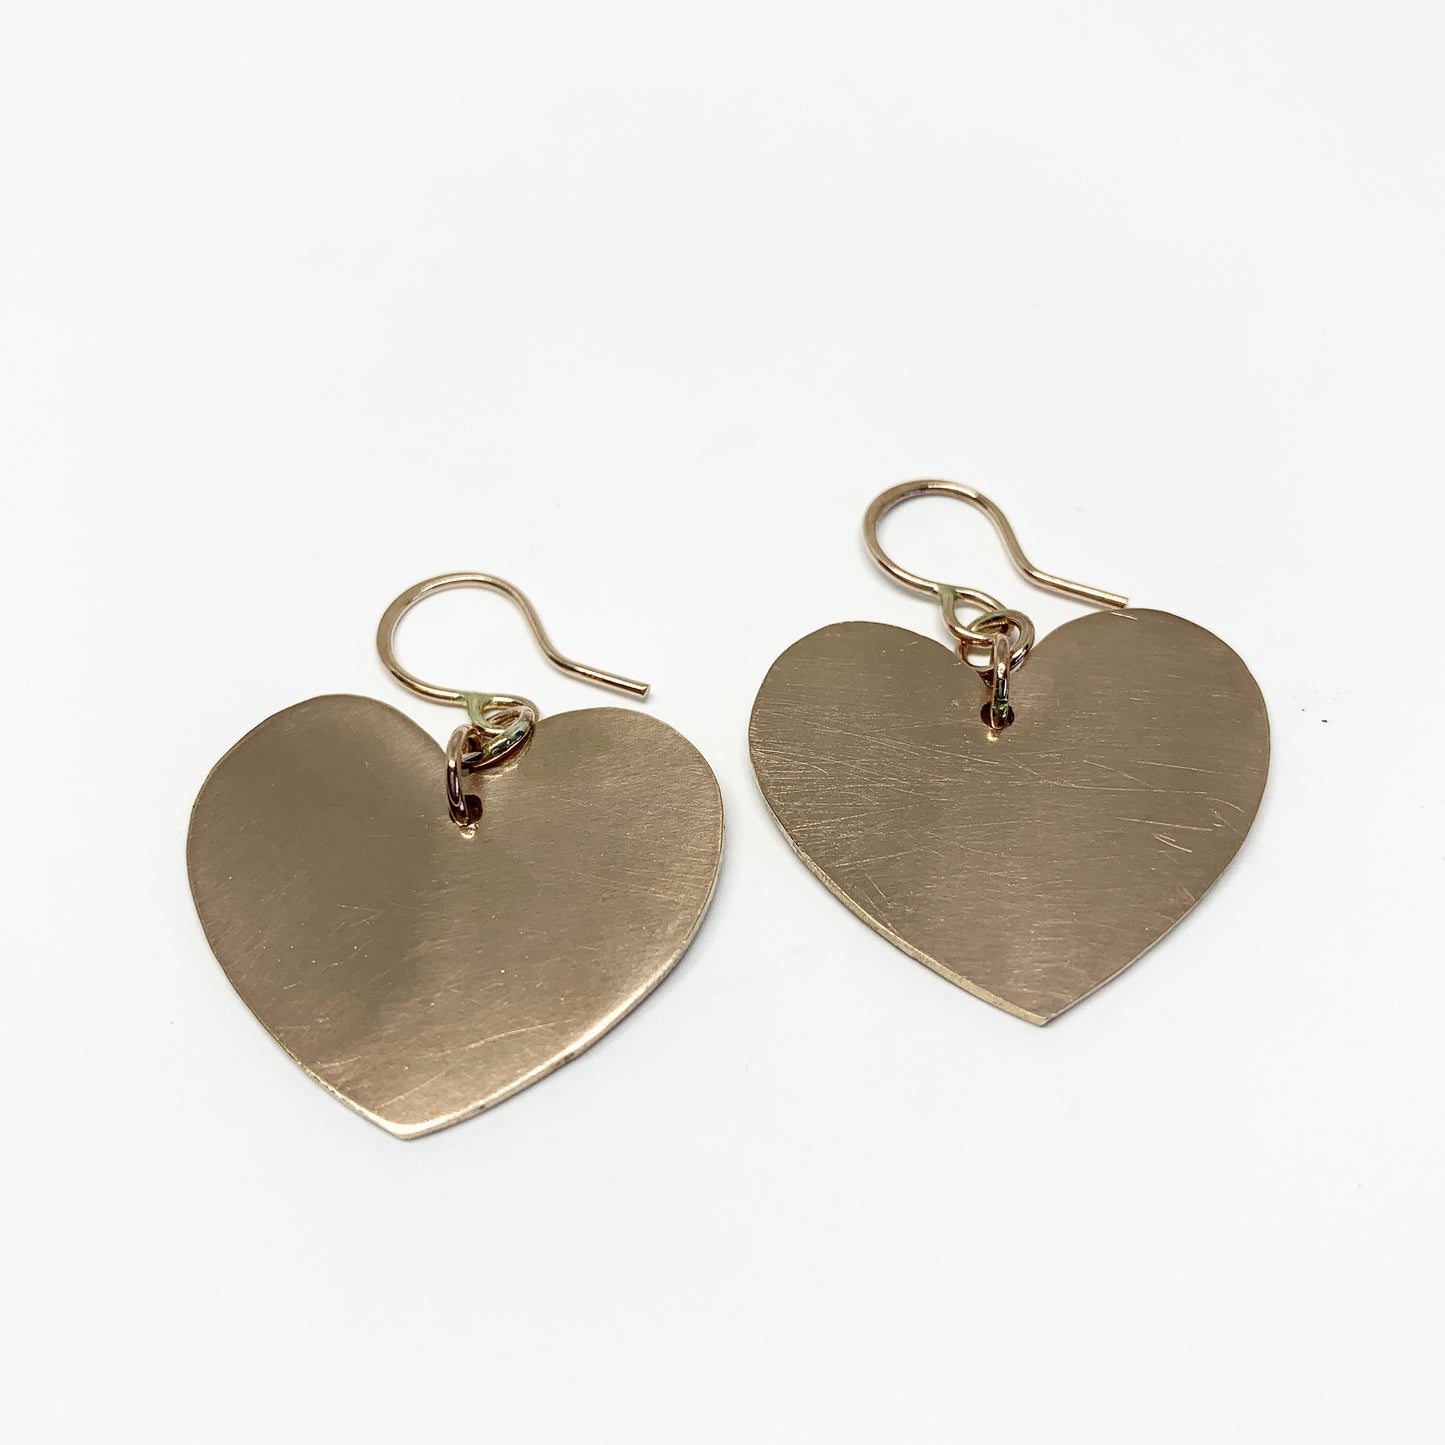 Love is Love - Heart Silhouette Earrings - Jennifer Cervelli Jewelry